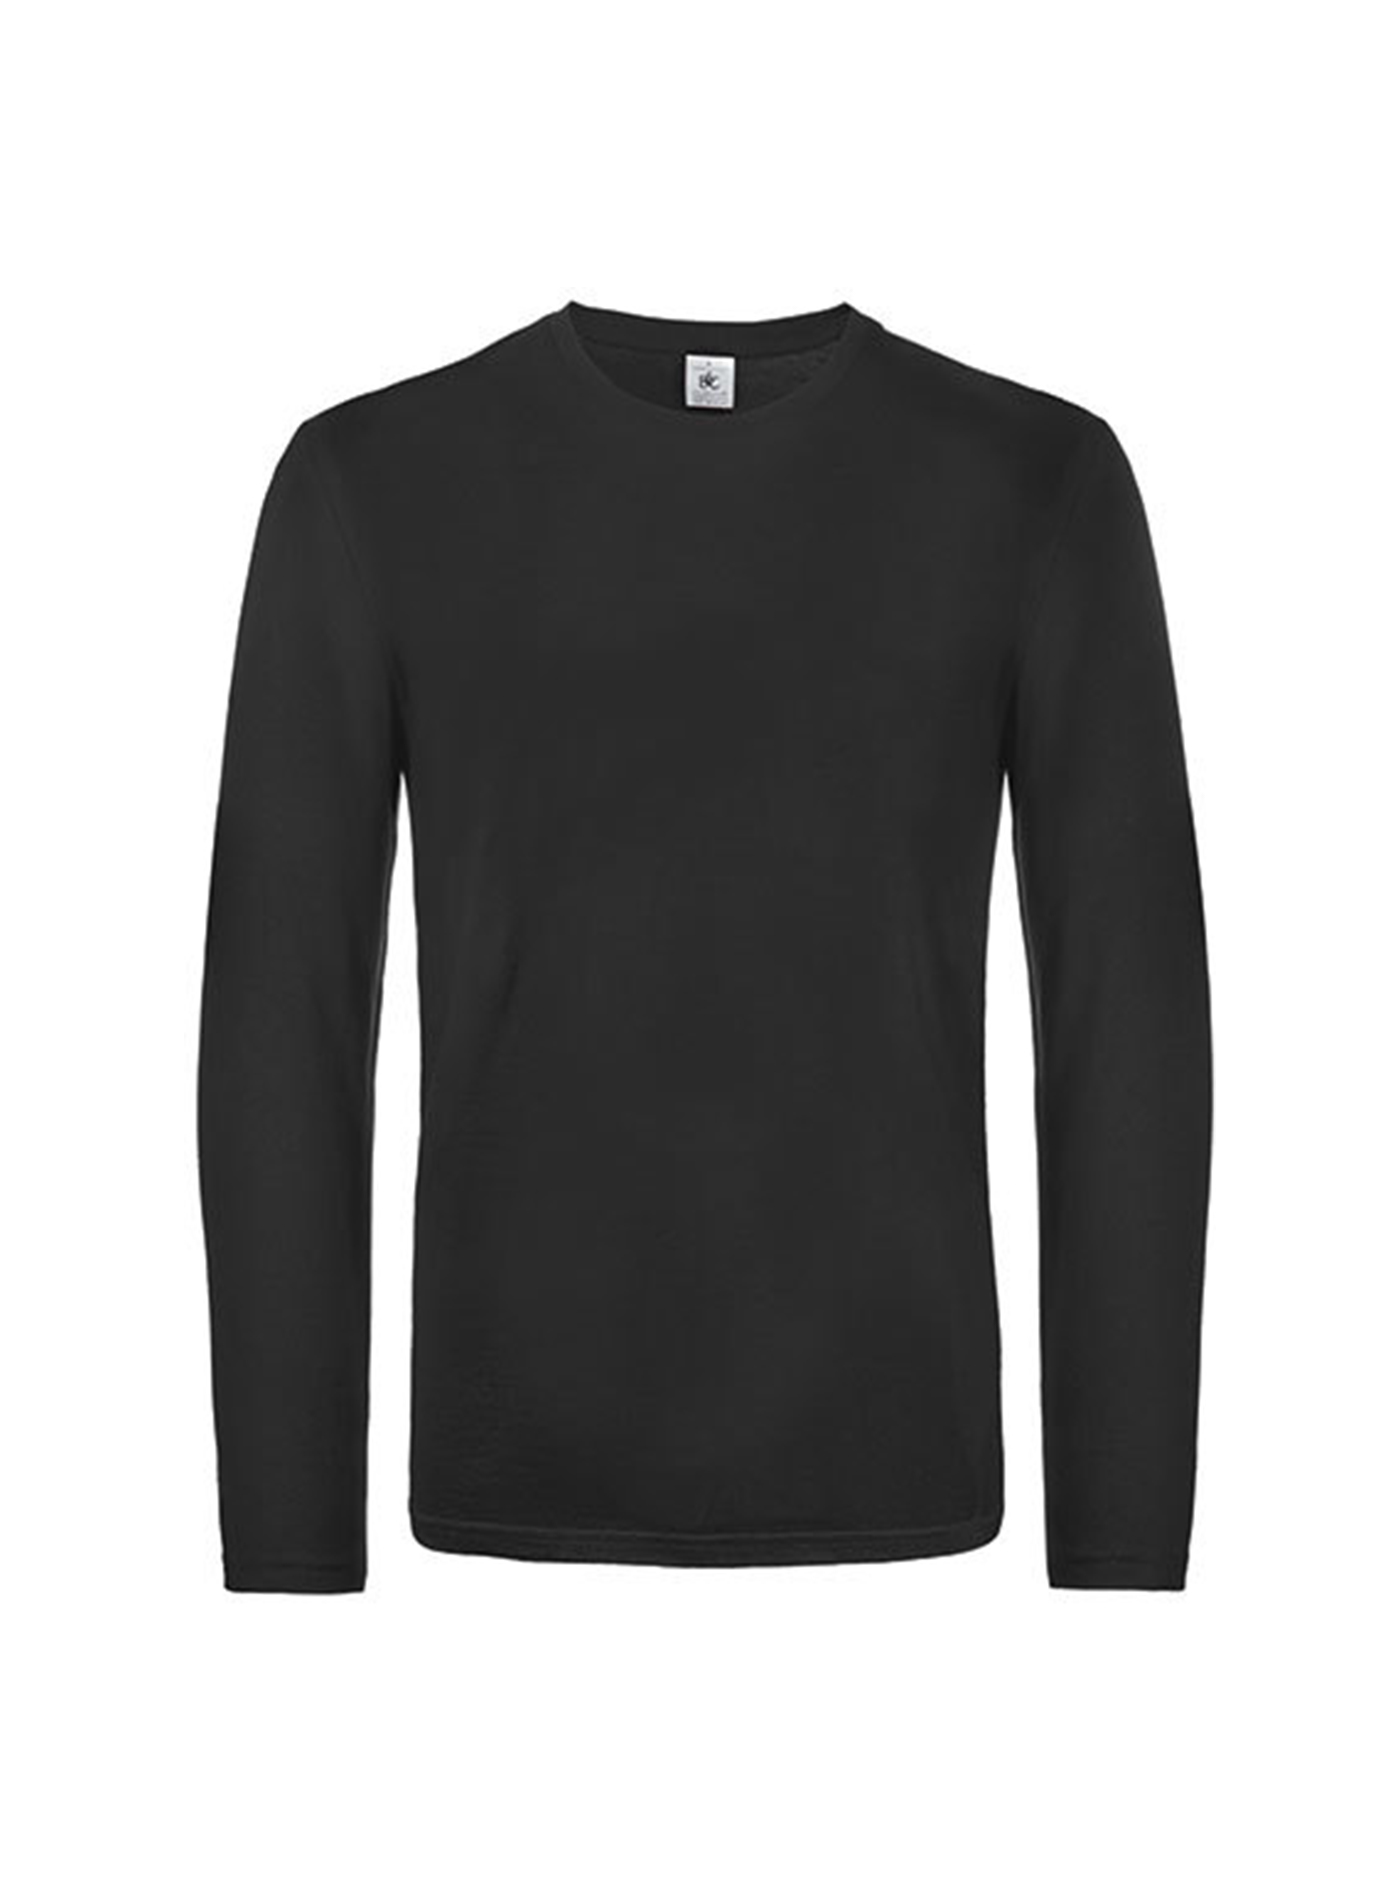 Pánské tričko s dlouhým rukávem B&C Collection - Černá M